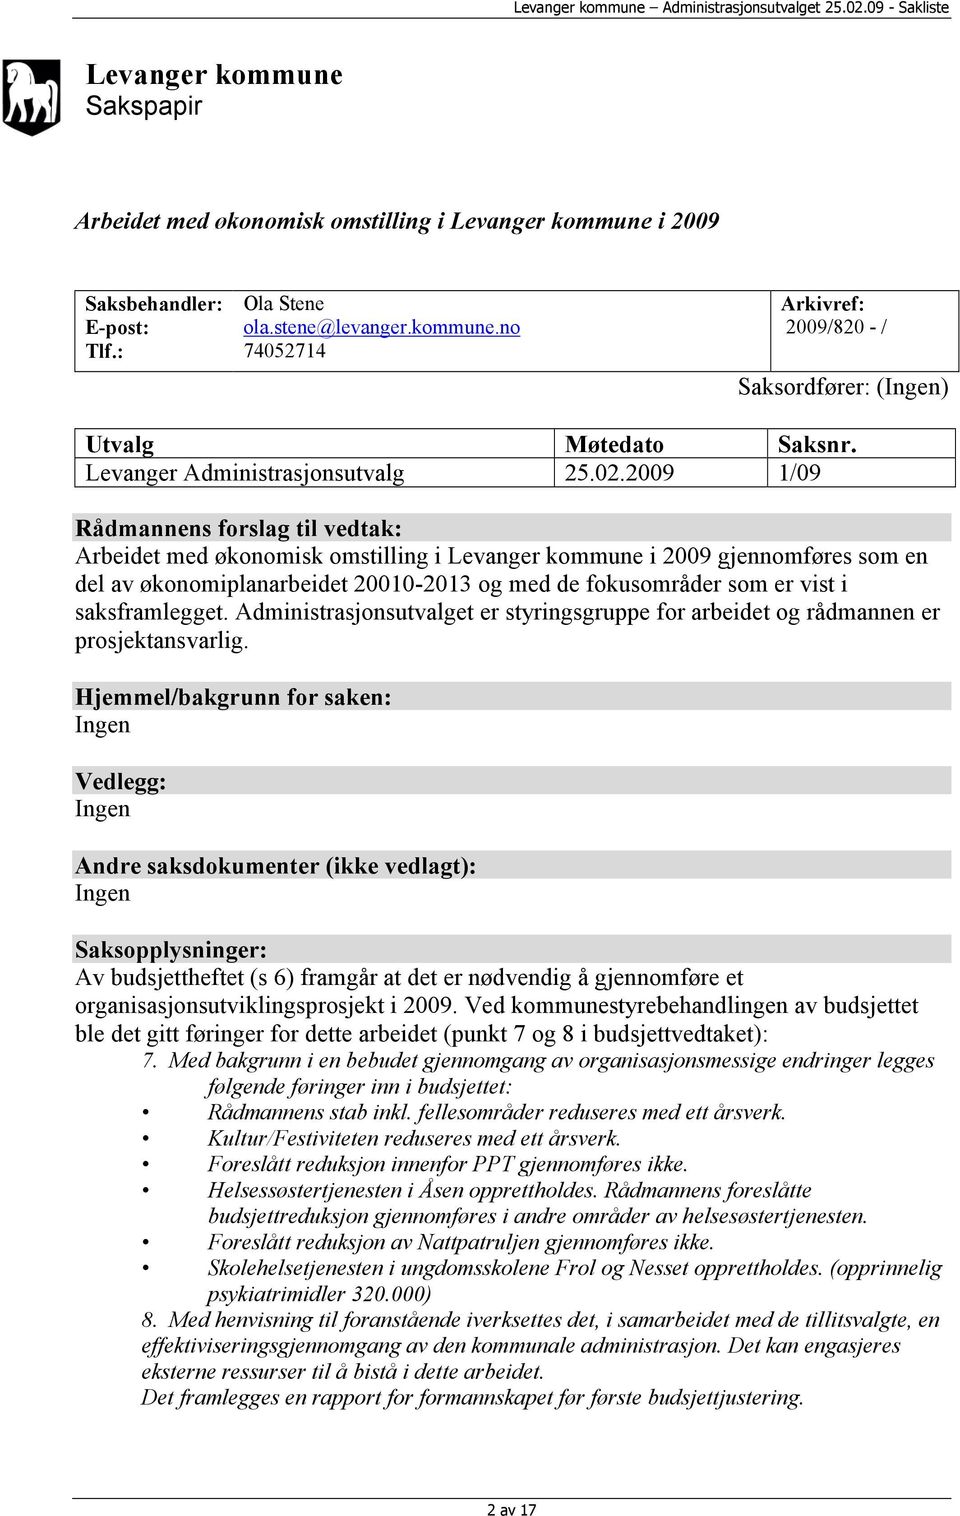 2009 1/09 Rådmannens forslag til vedtak: Arbeidet med økonomisk omstilling i Levanger kommune i 2009 gjennomføres som en del av økonomiplanarbeidet 20010-2013 og med de fokusområder som er vist i